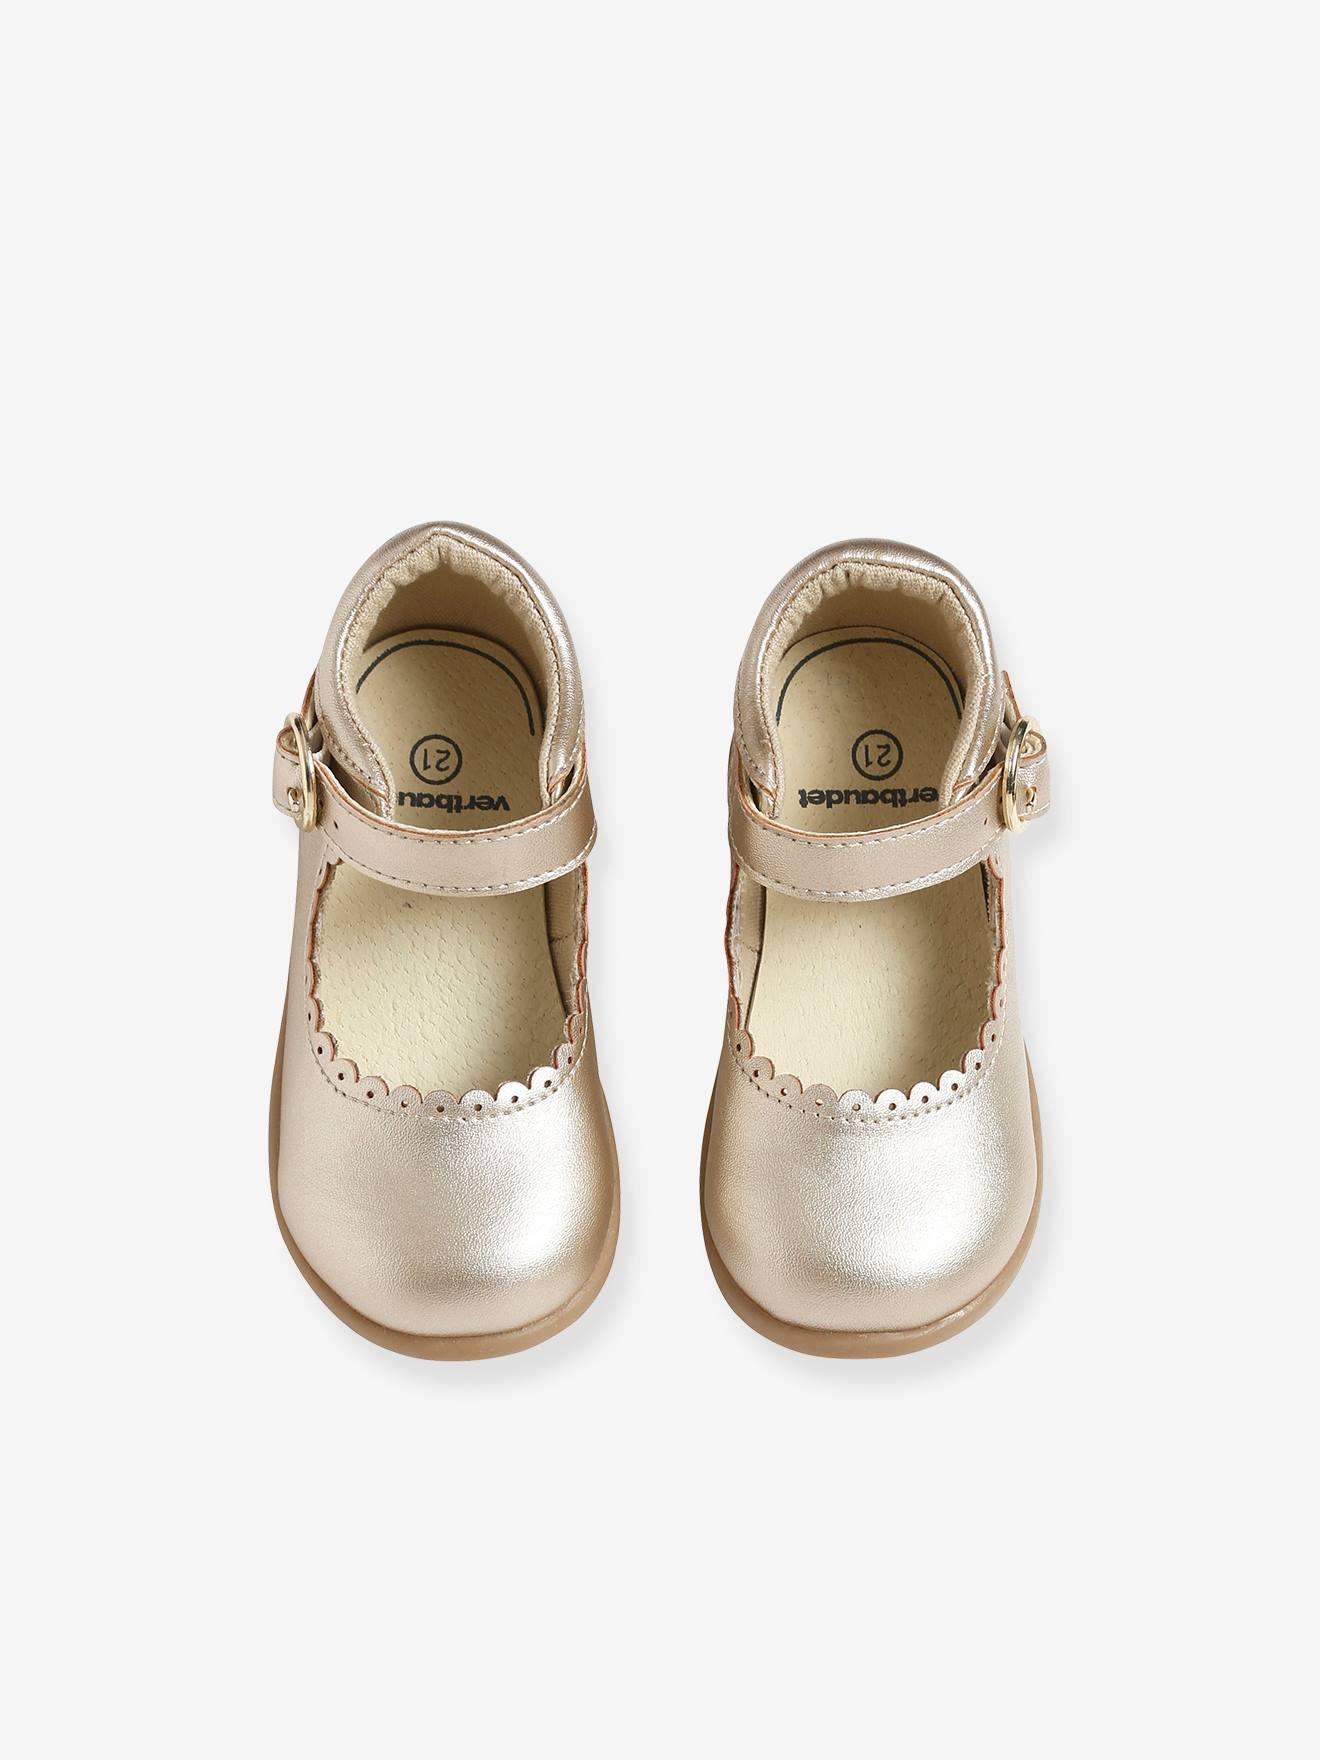 Baby Shoe Schoenen Meisjesschoenen Mary Janes Leather Baby Shoe Caramel T-bar Baby Shower Gift Baby Girl Shoe Baby Mary Jane Soft Soled Baby Shoe Toddler Shoe 